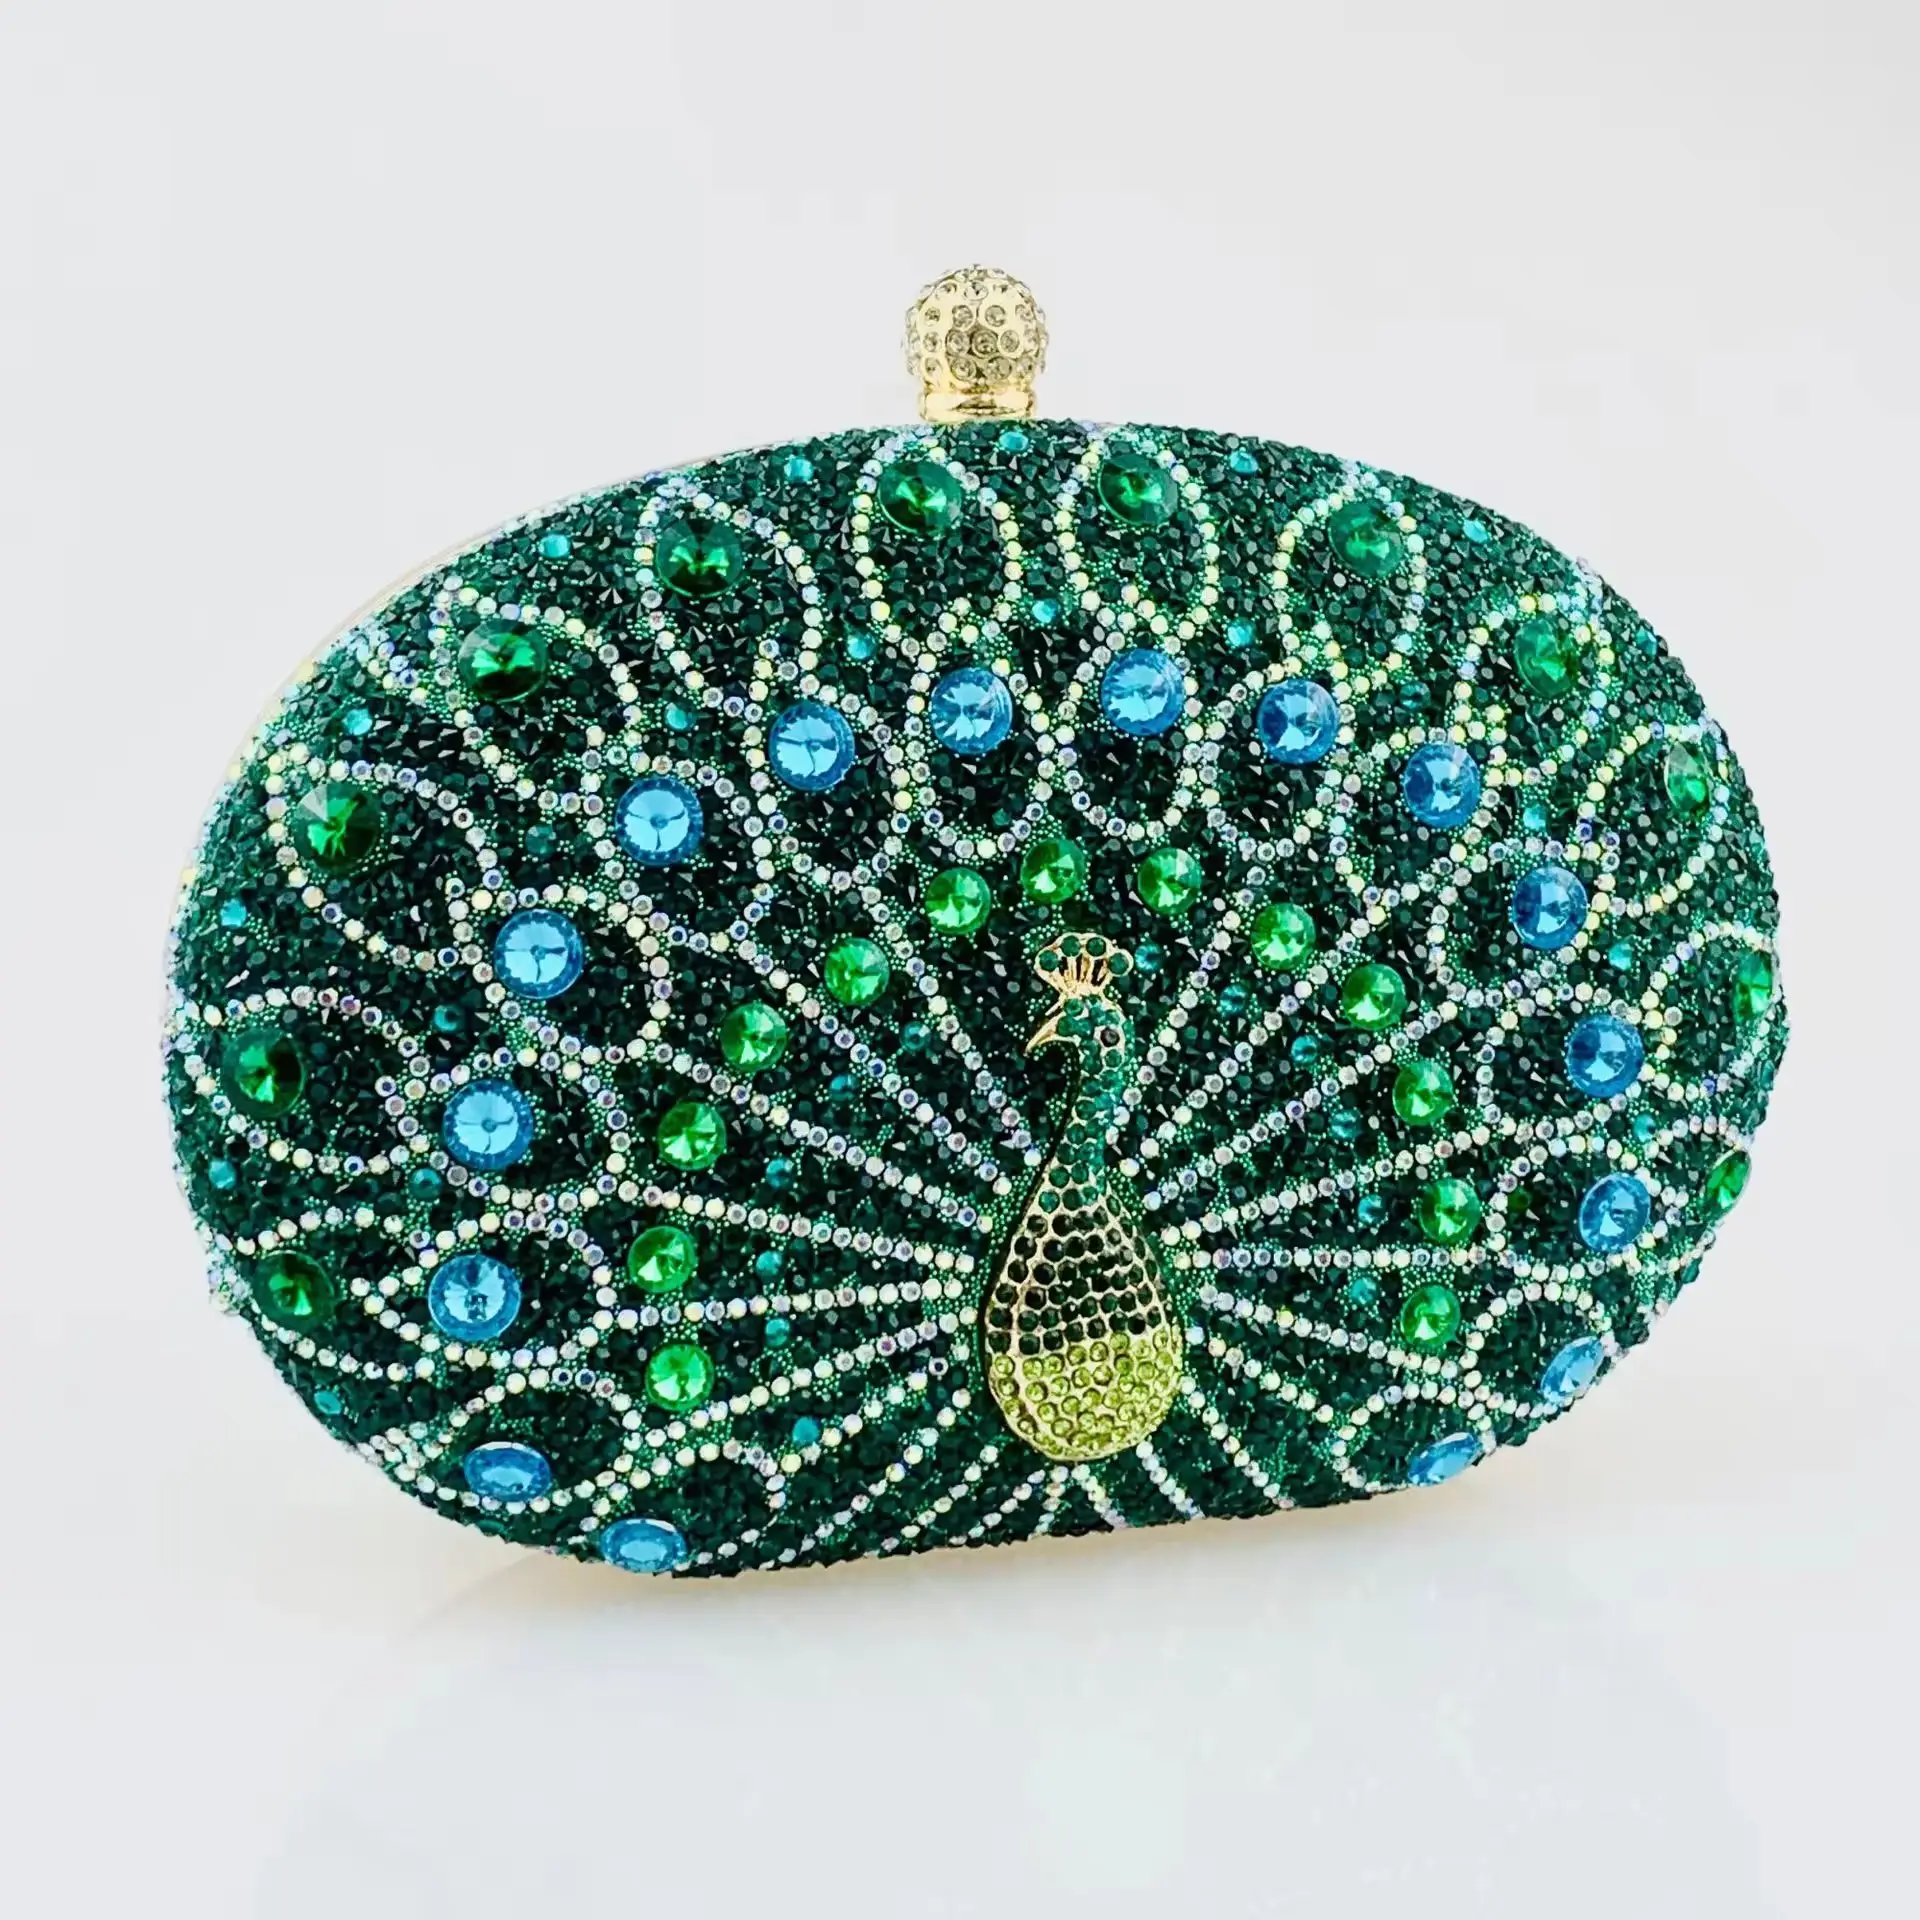 Vintage moda exquisito Pavo Real lujo diamante fiesta embrague señoras rhinestone bolsos de noche